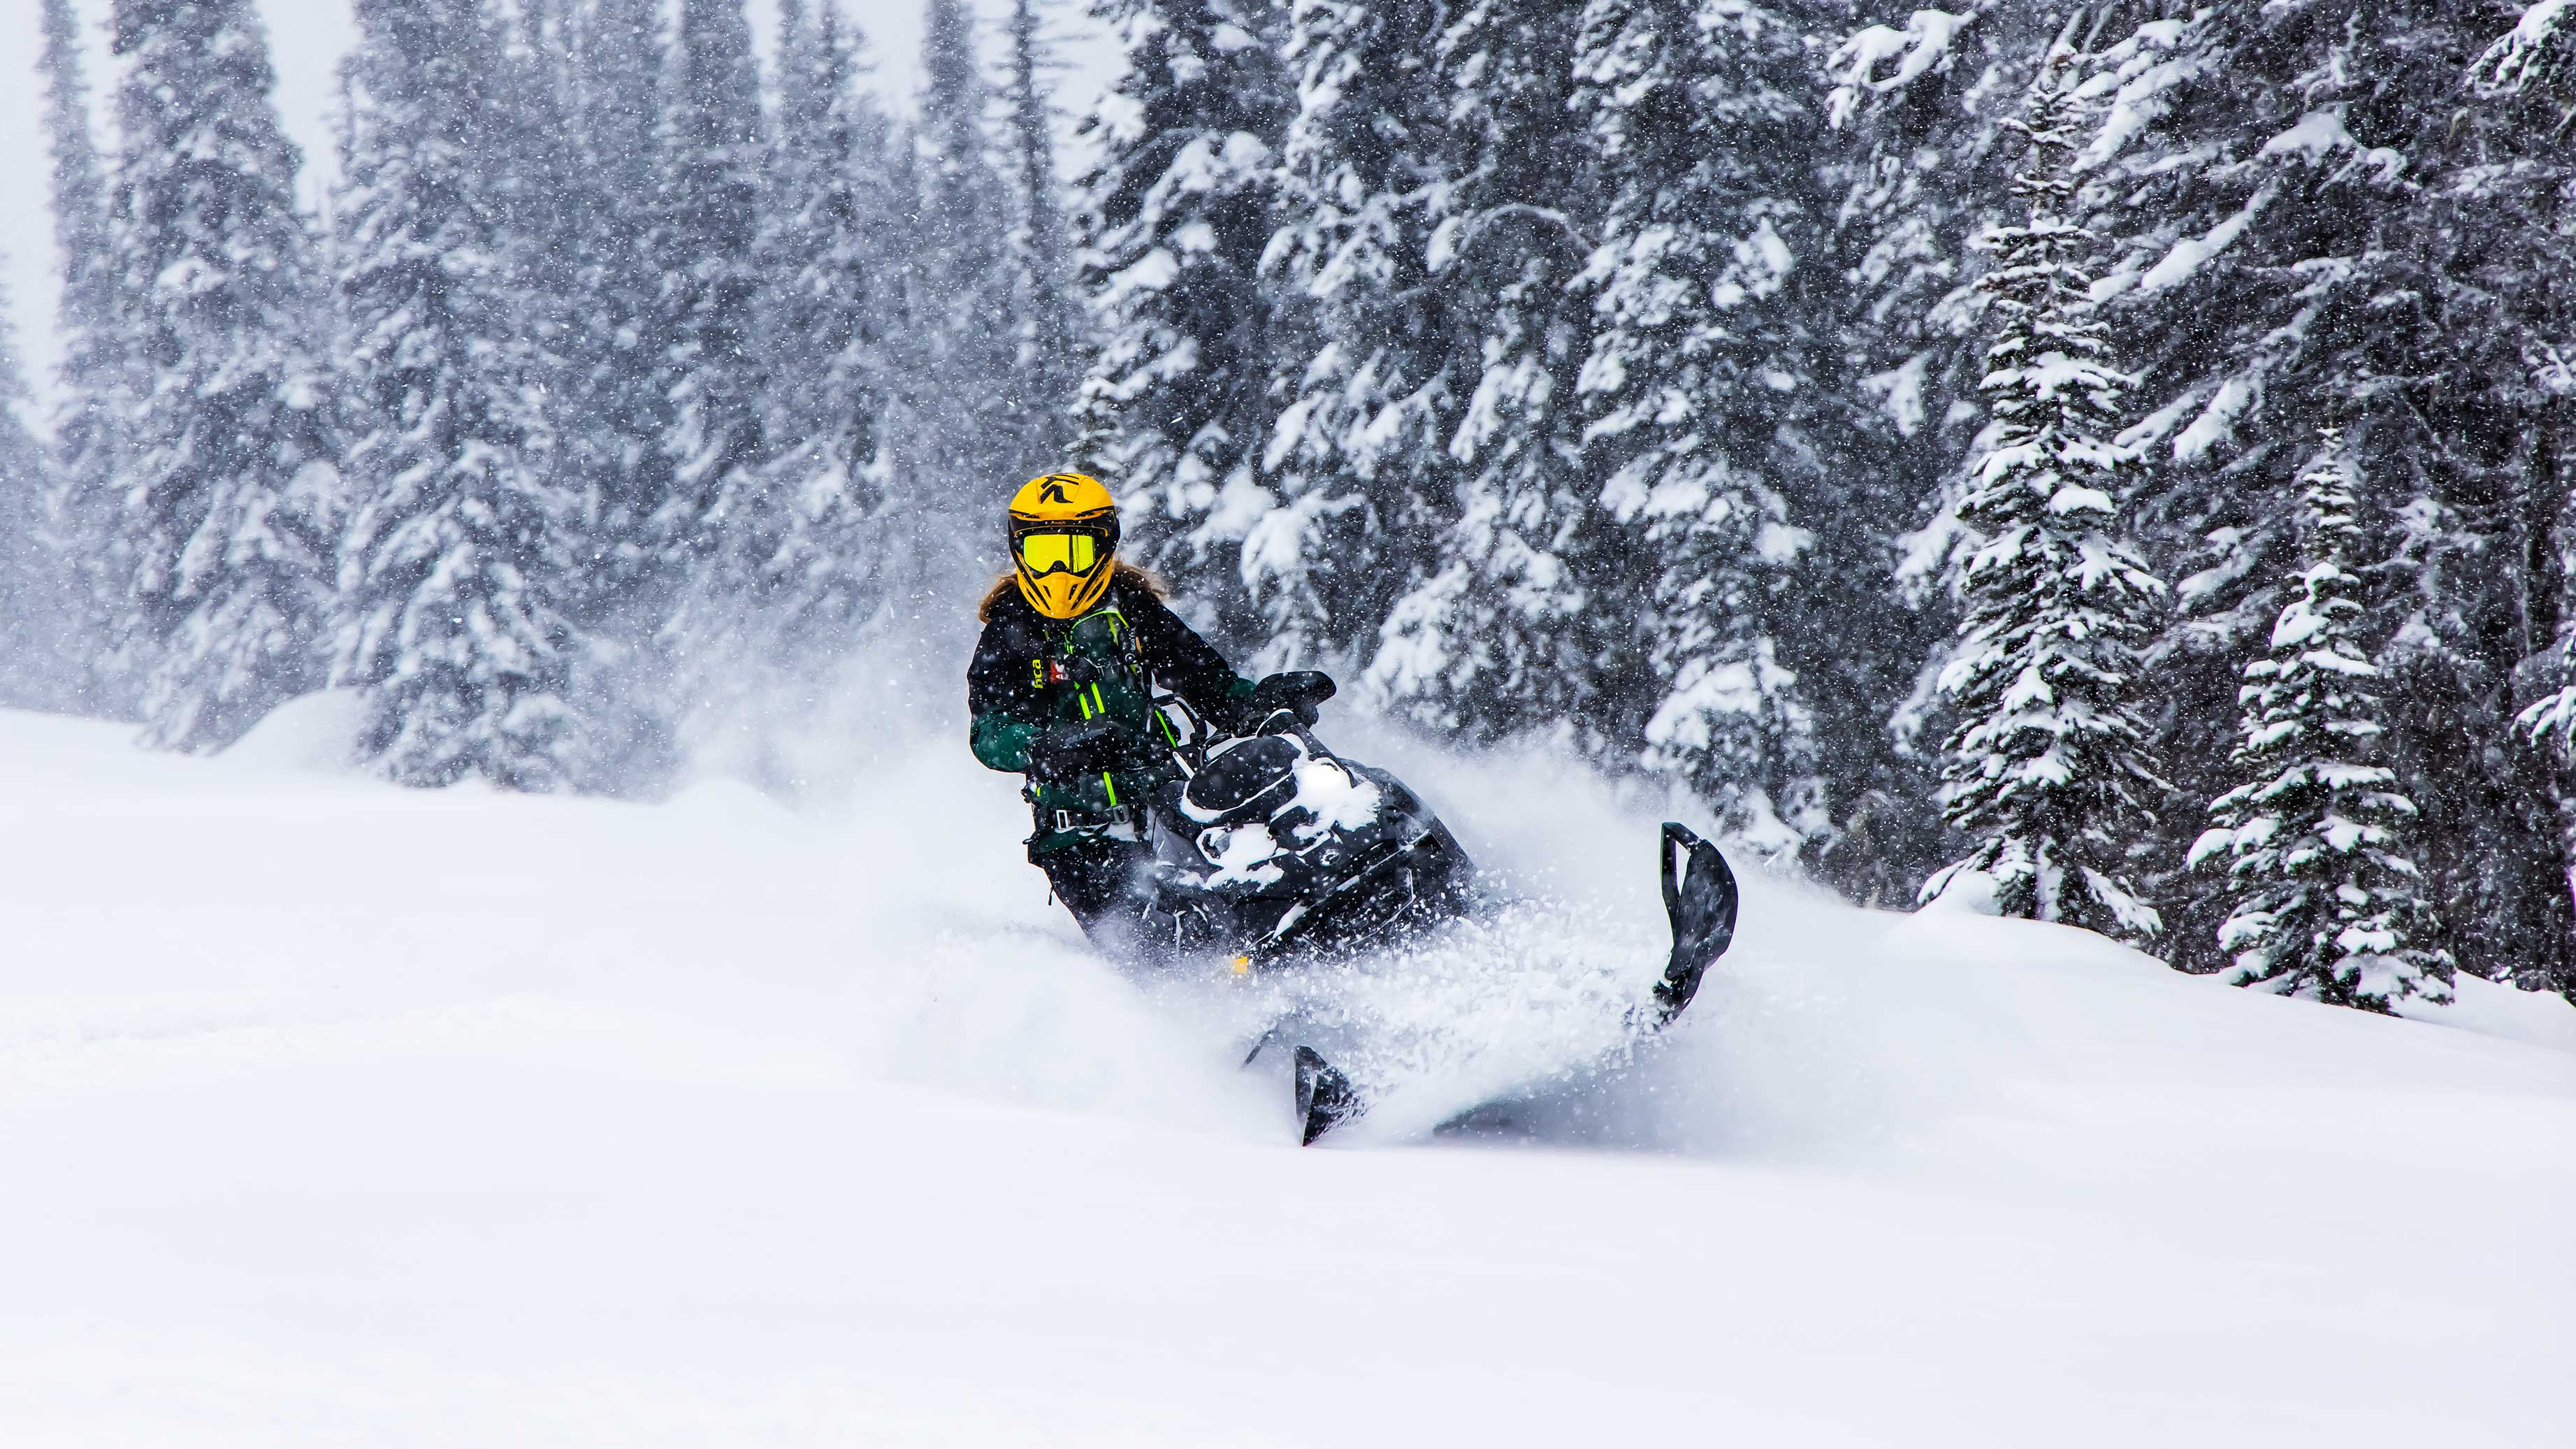 Δημιουργήστε το Ski-Doo snowmobile σας